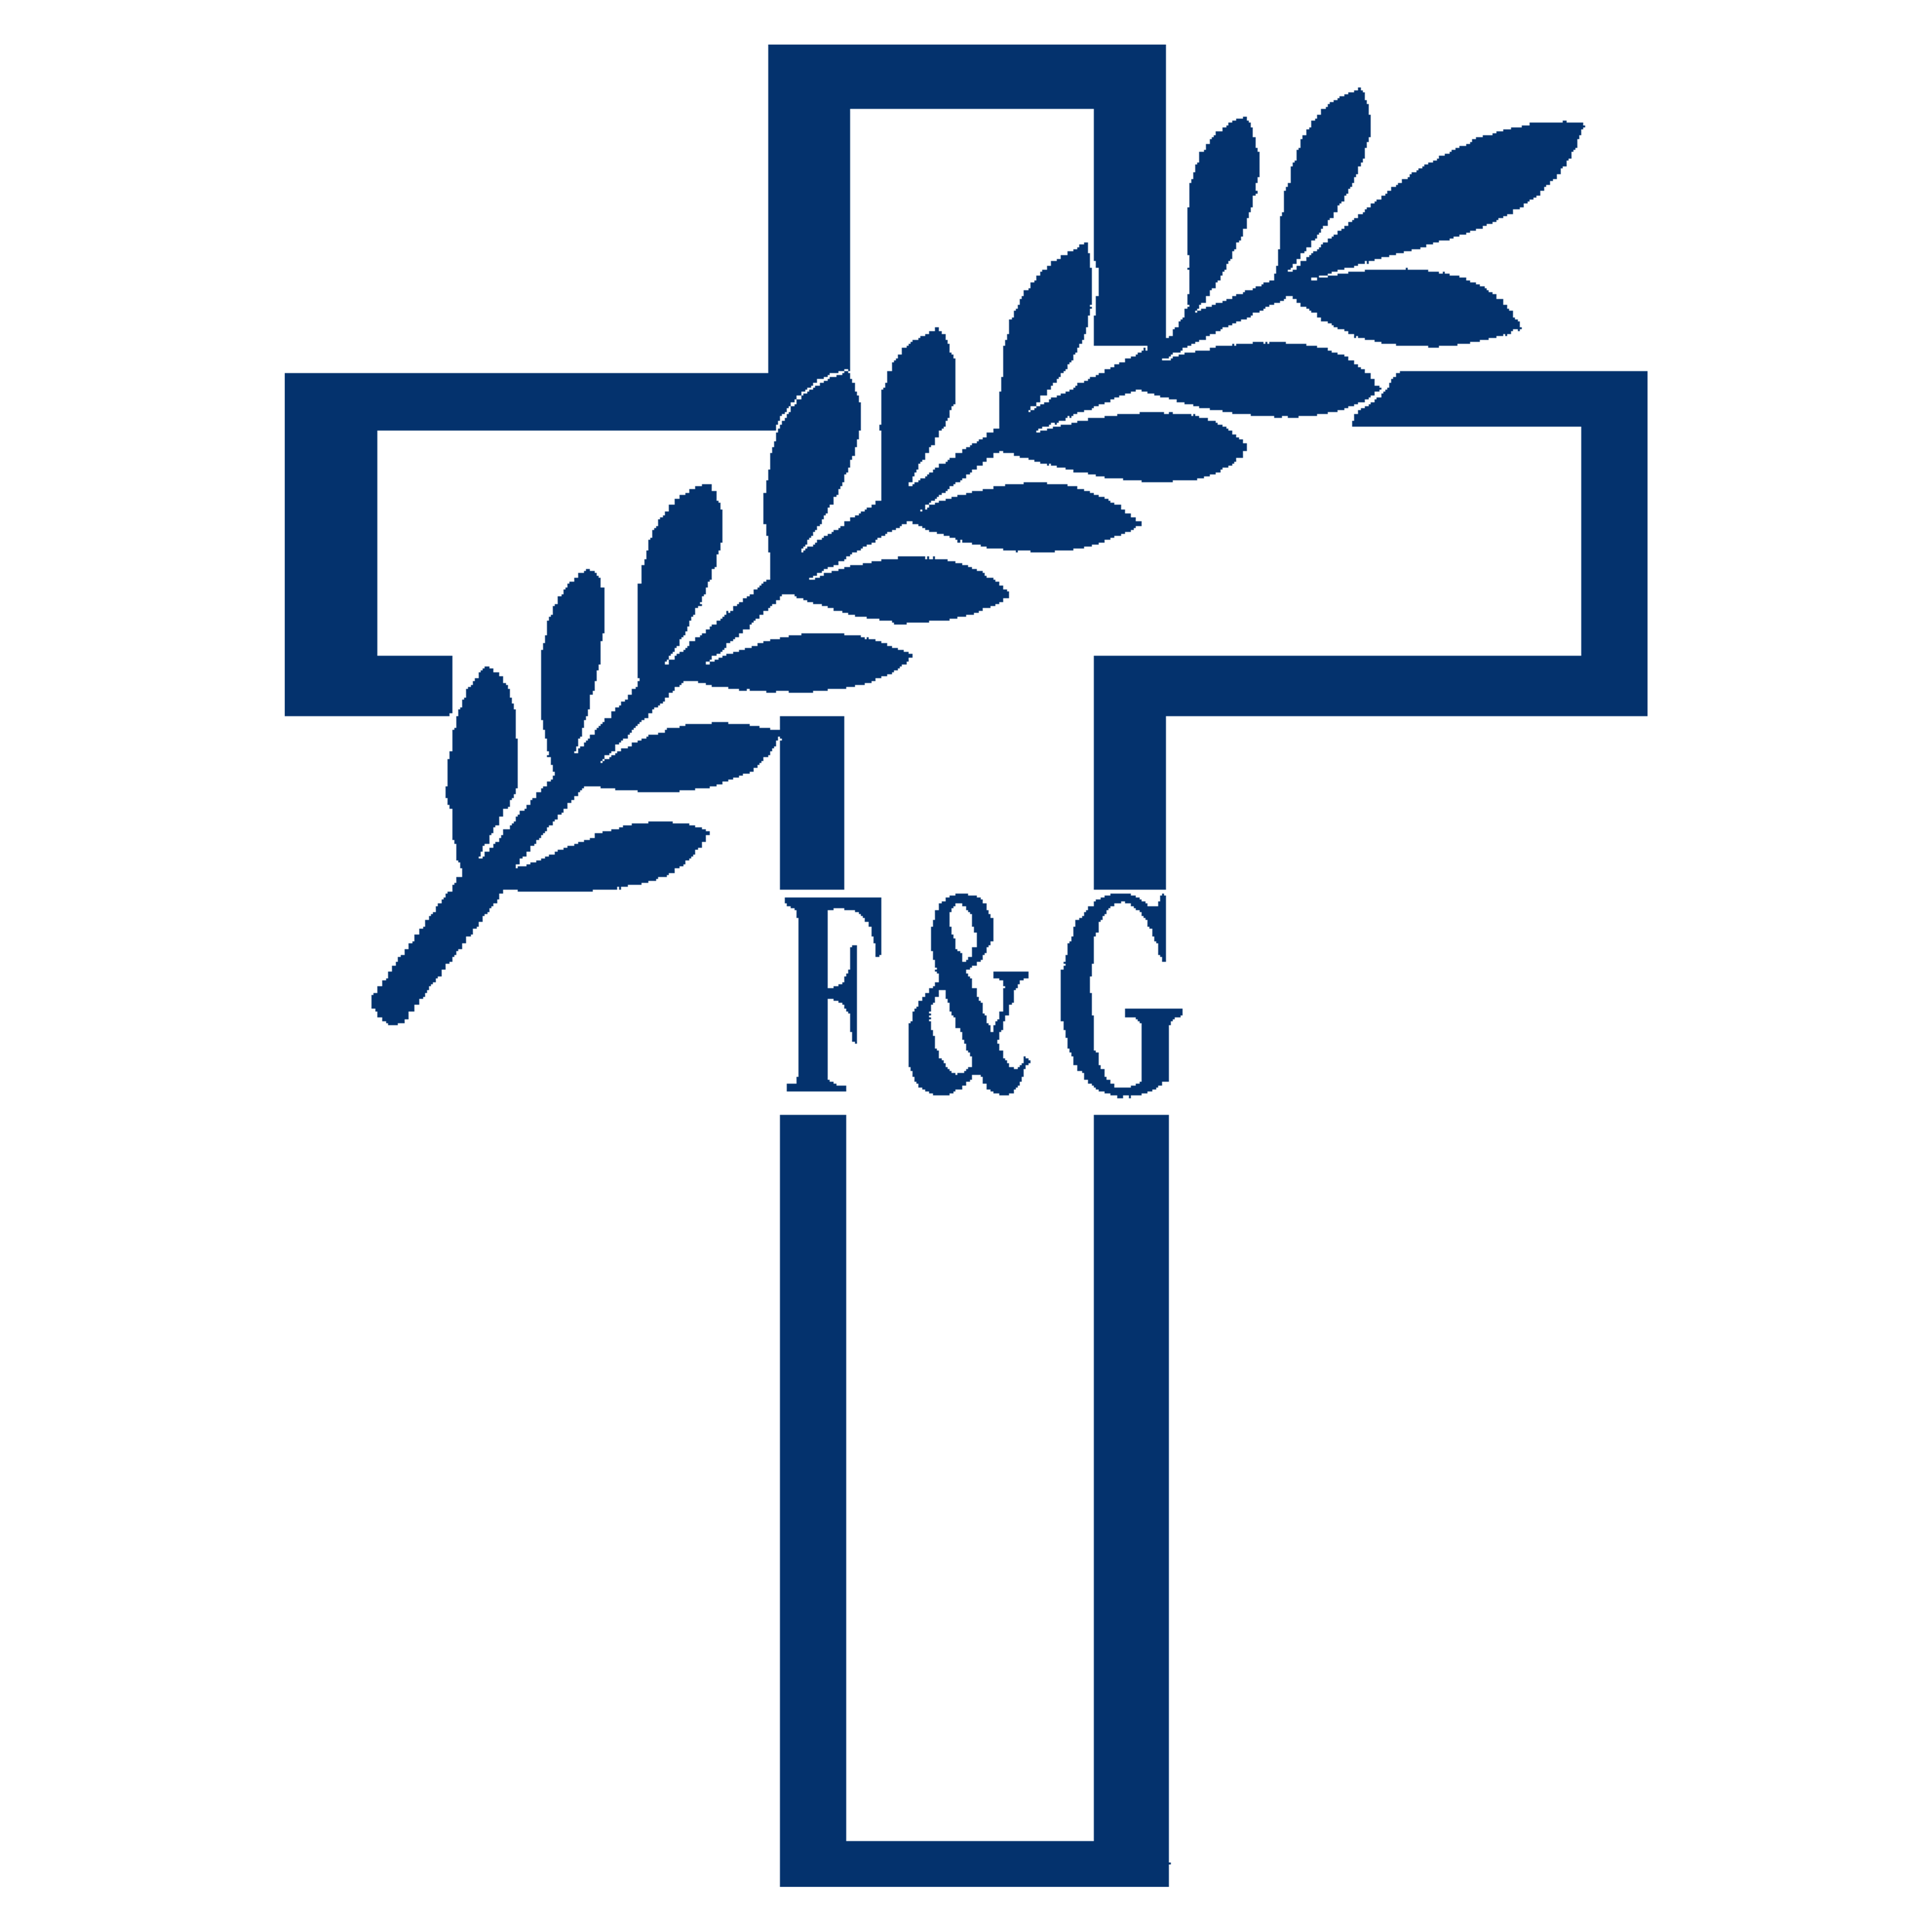 Beerdigungsinstitut Fattler & Gröbler GmbH in Teltow - Logo